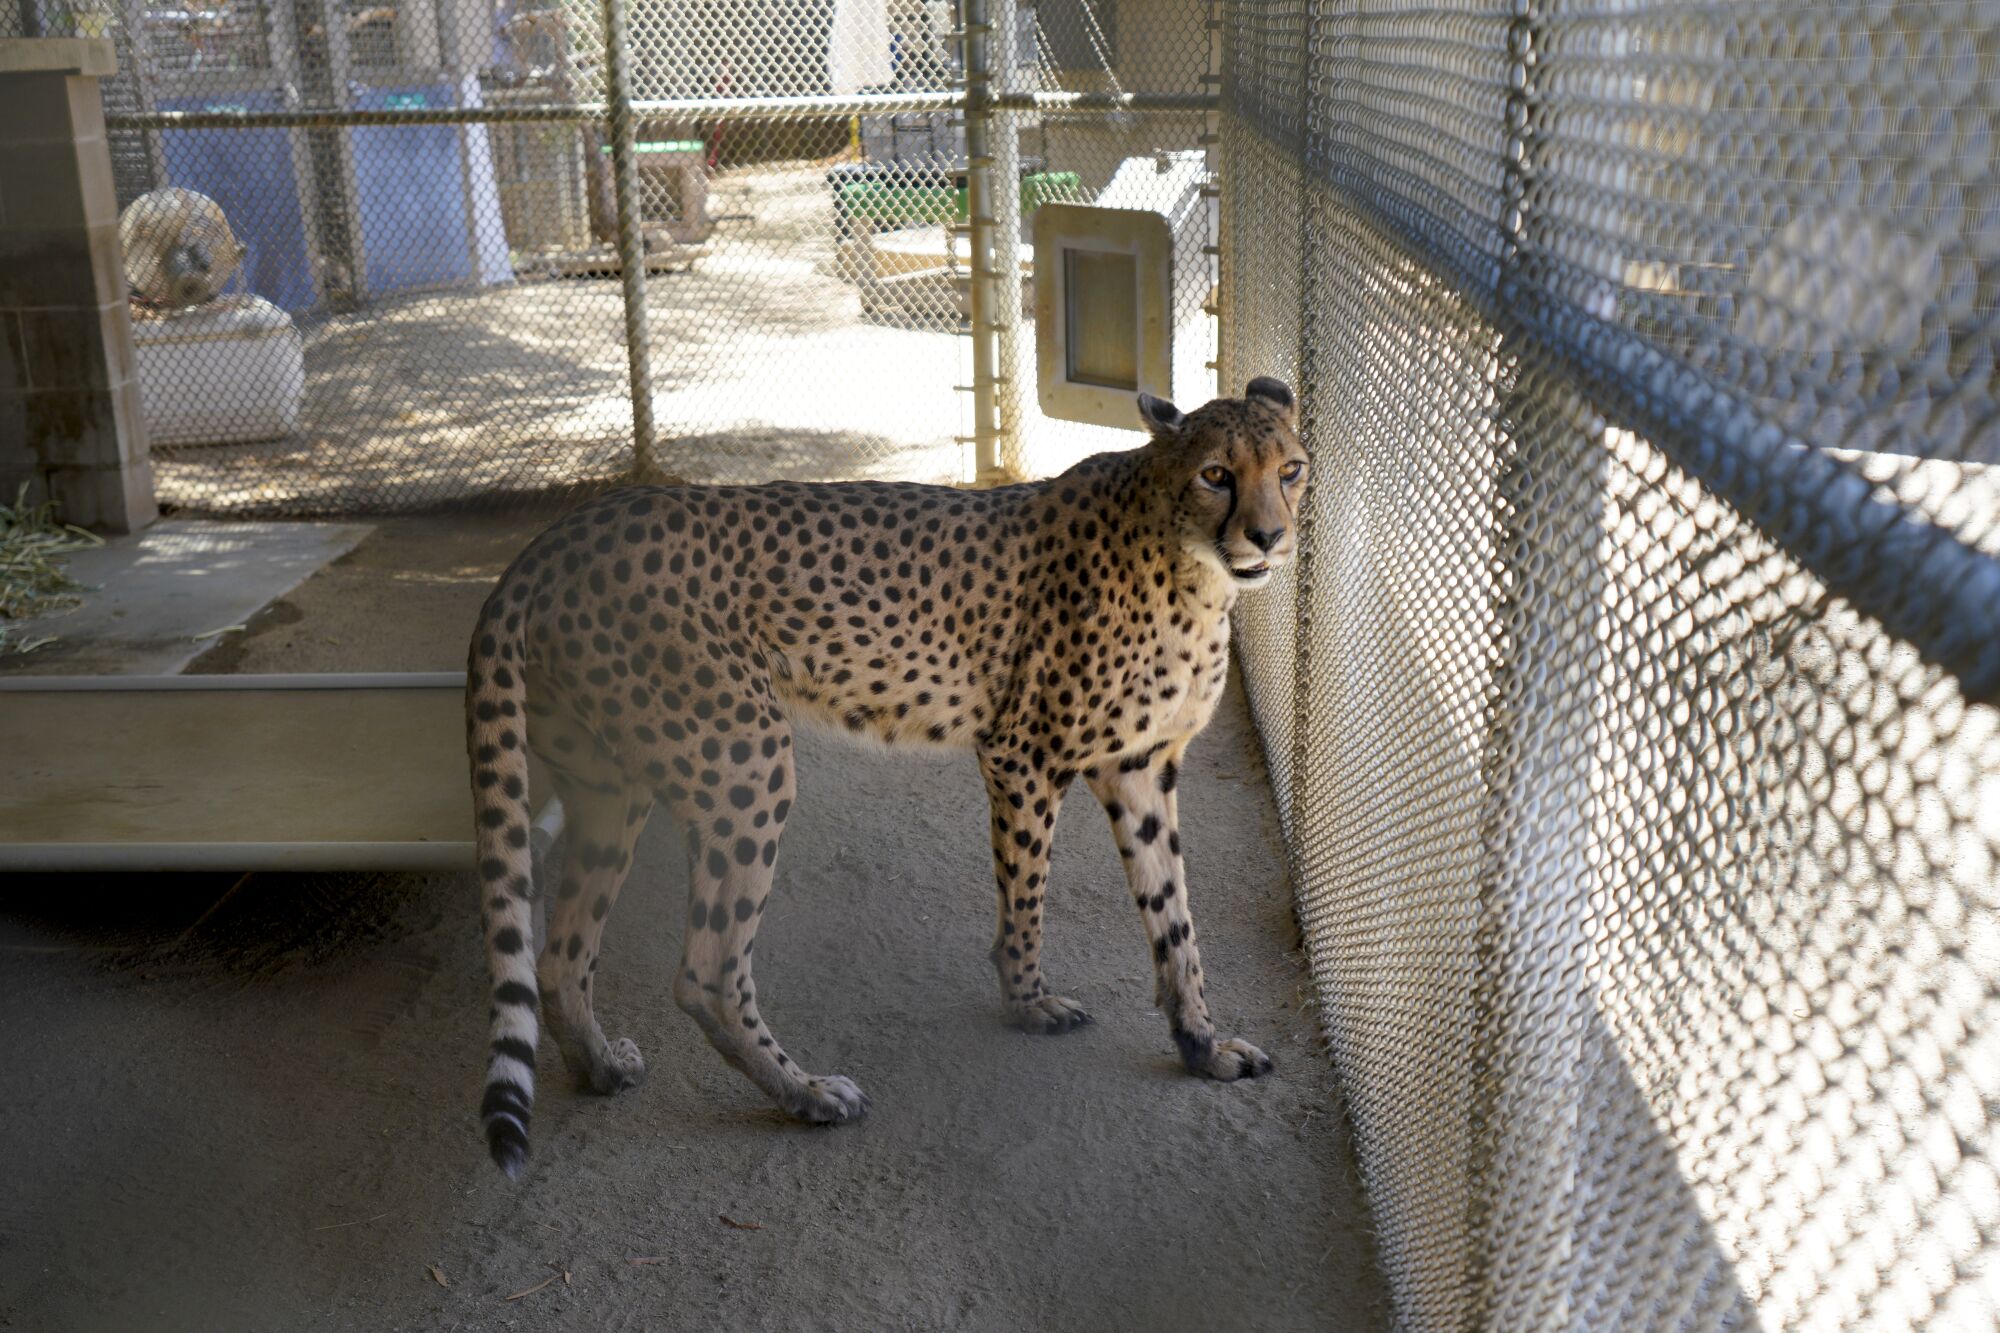 A cheetah is shown